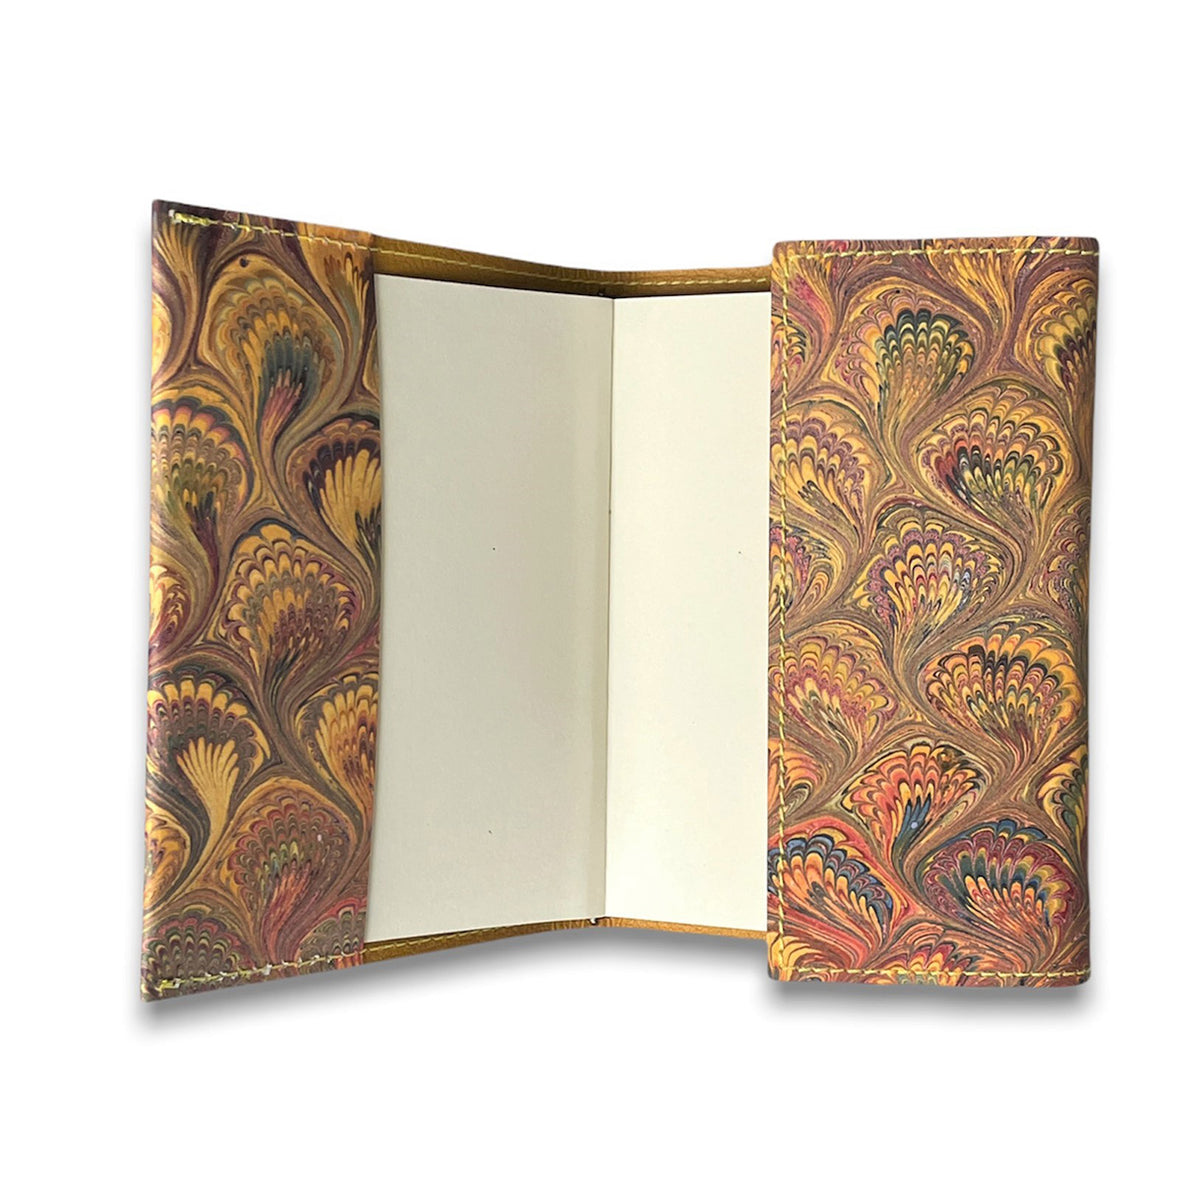 Florentine Sketchbook Marble Gold Leather